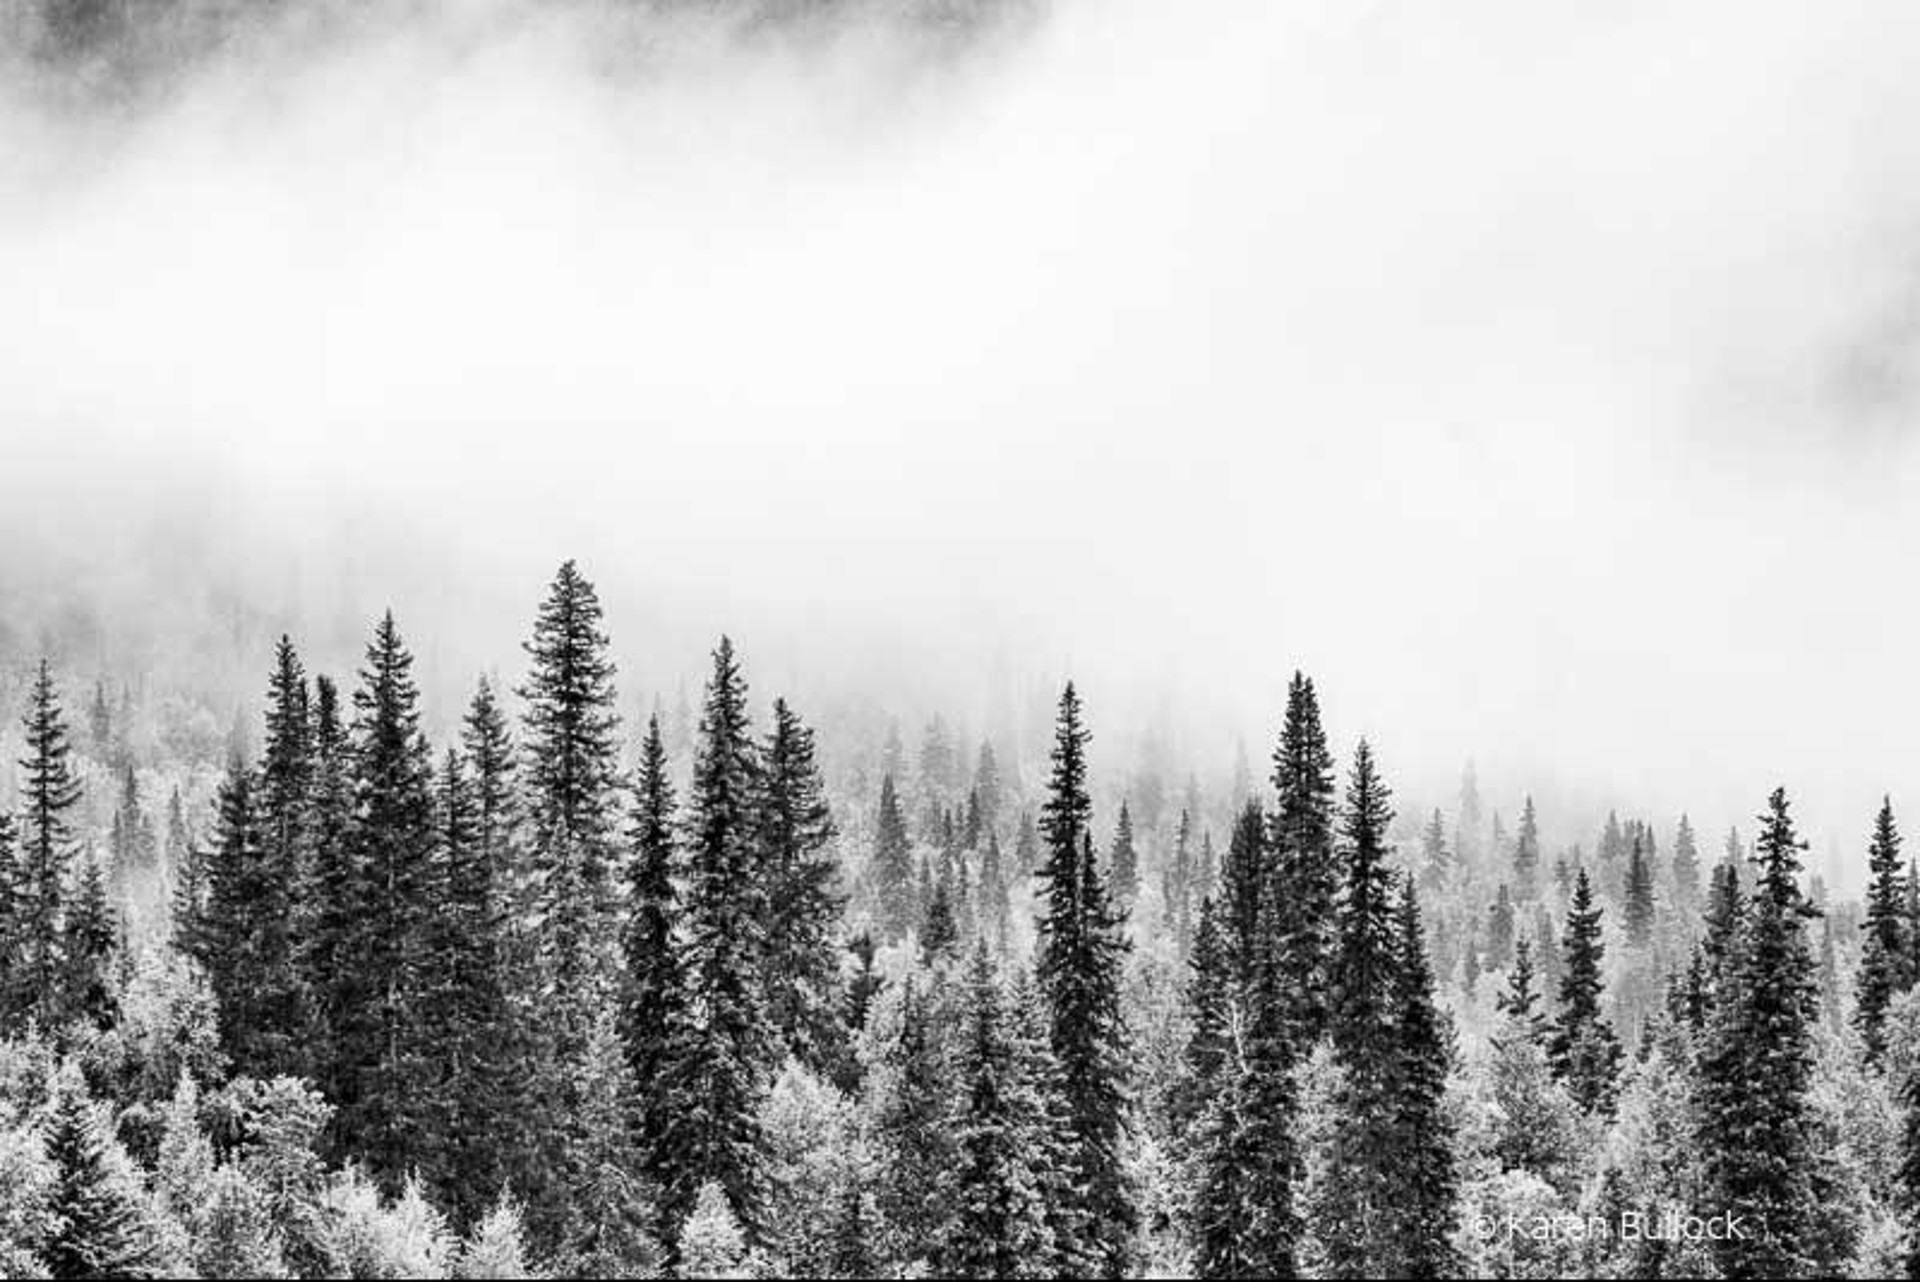 Misty Forest by Karen Bullock